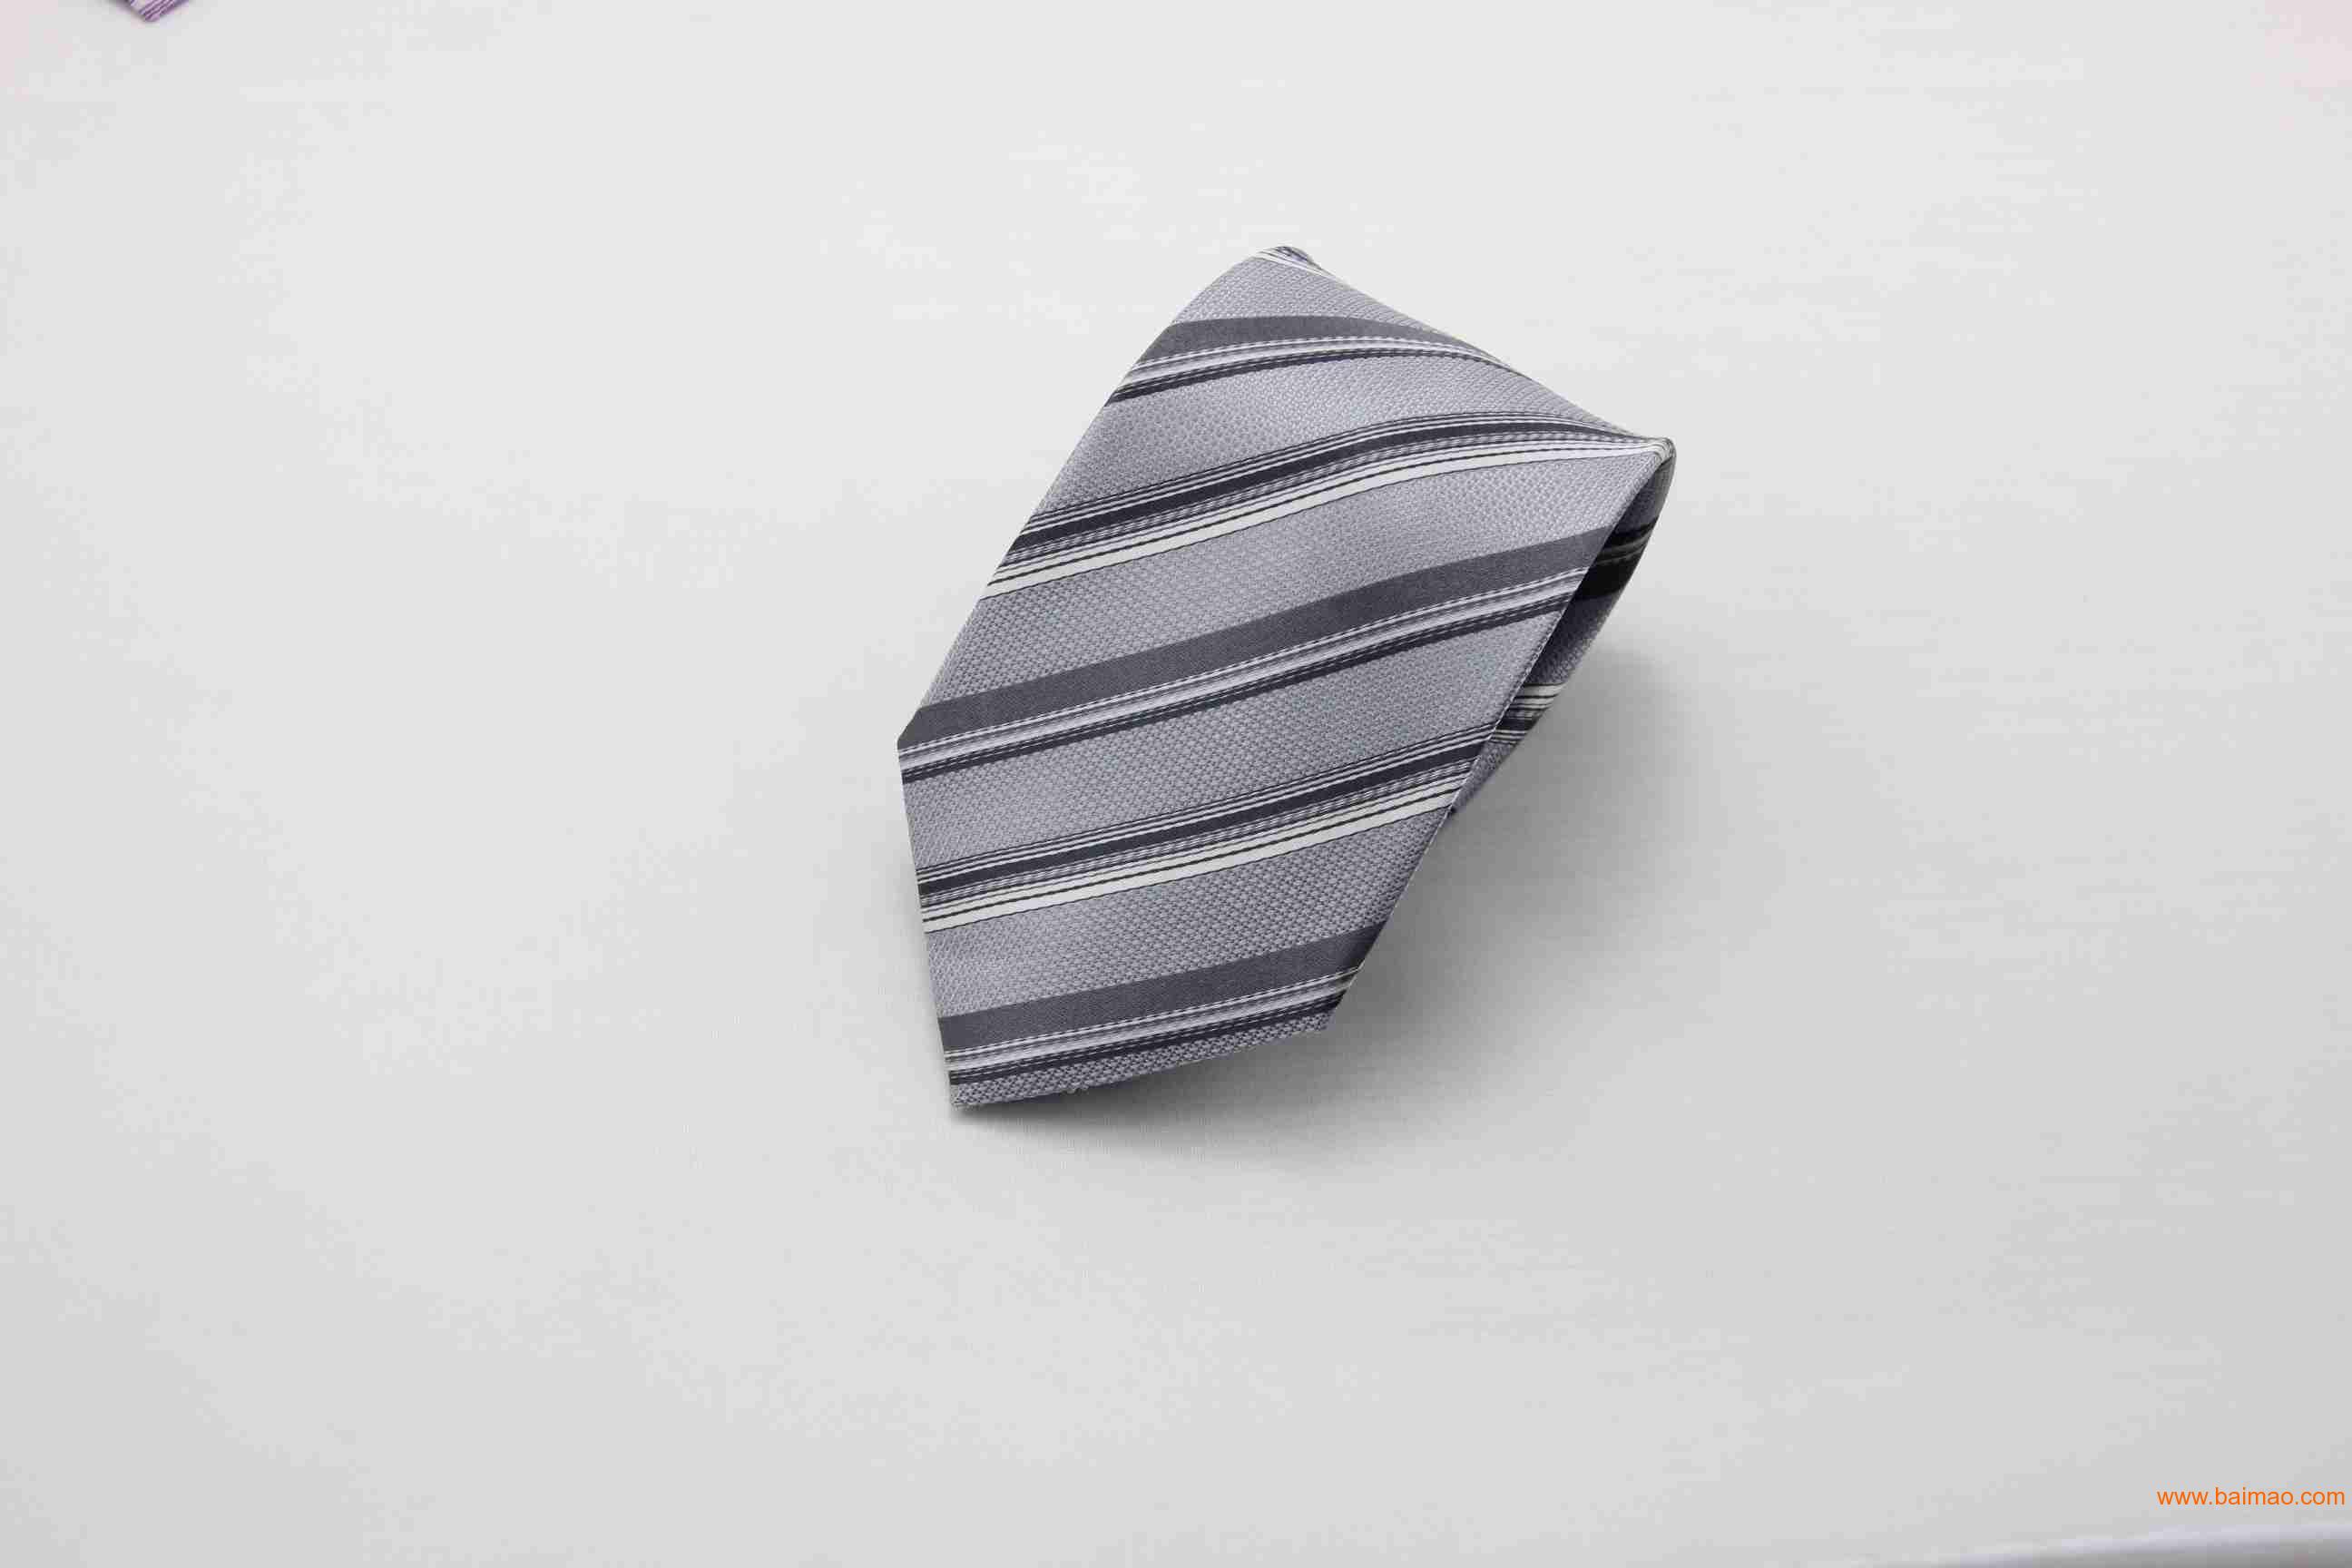 迪岳商务男士春款蓝色条纹**涤丝色织领带